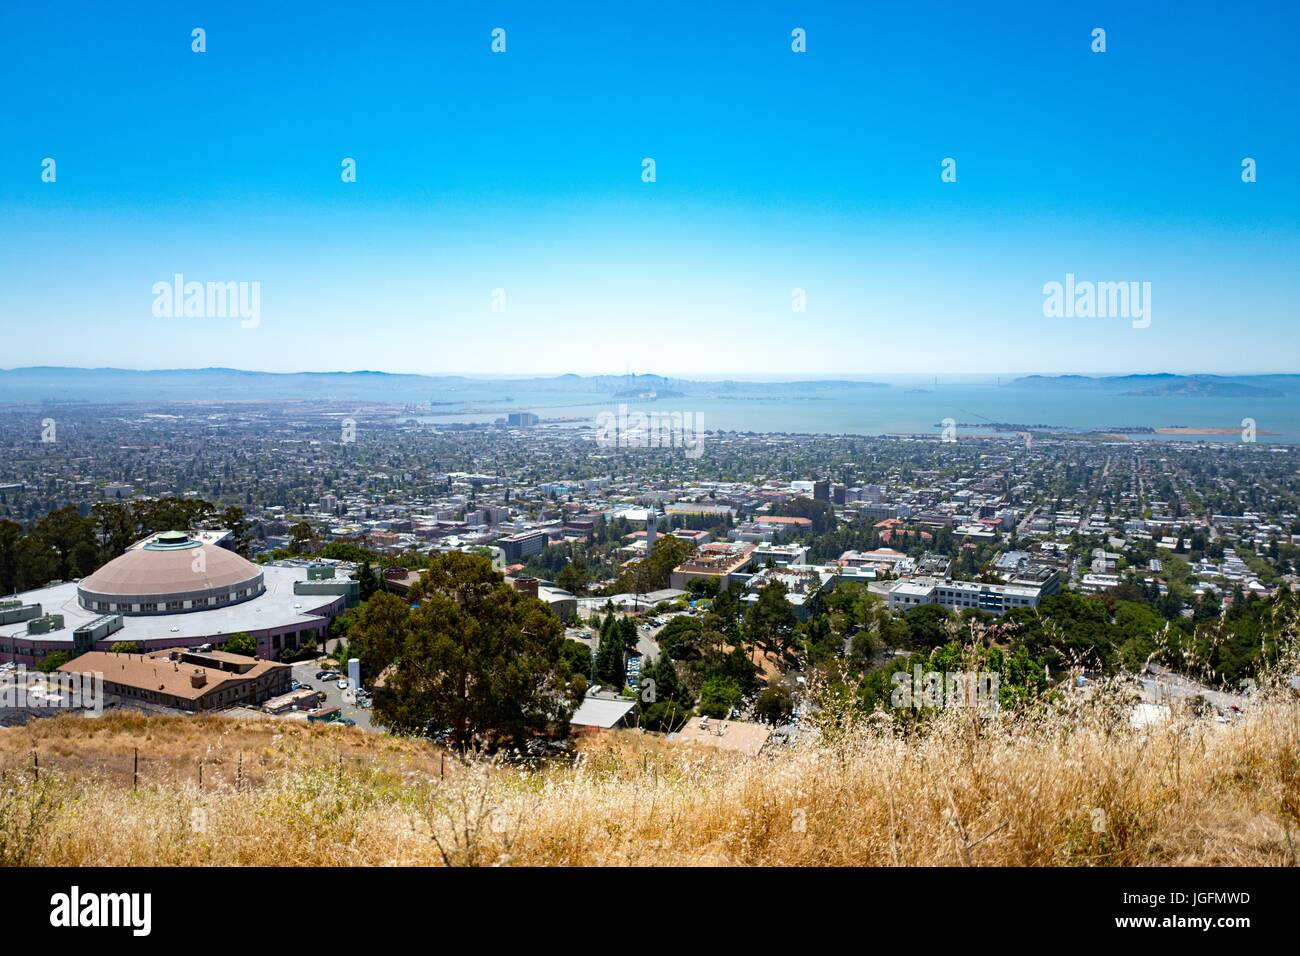 Vue aérienne de Berkeley, Californie) de la Berkeley Hills, à l'Université de Californie, la ville d'Oakland, et le San Francisco Bay Bridge visible, Berkeley, Californie, le 19 juin 2017. Banque D'Images